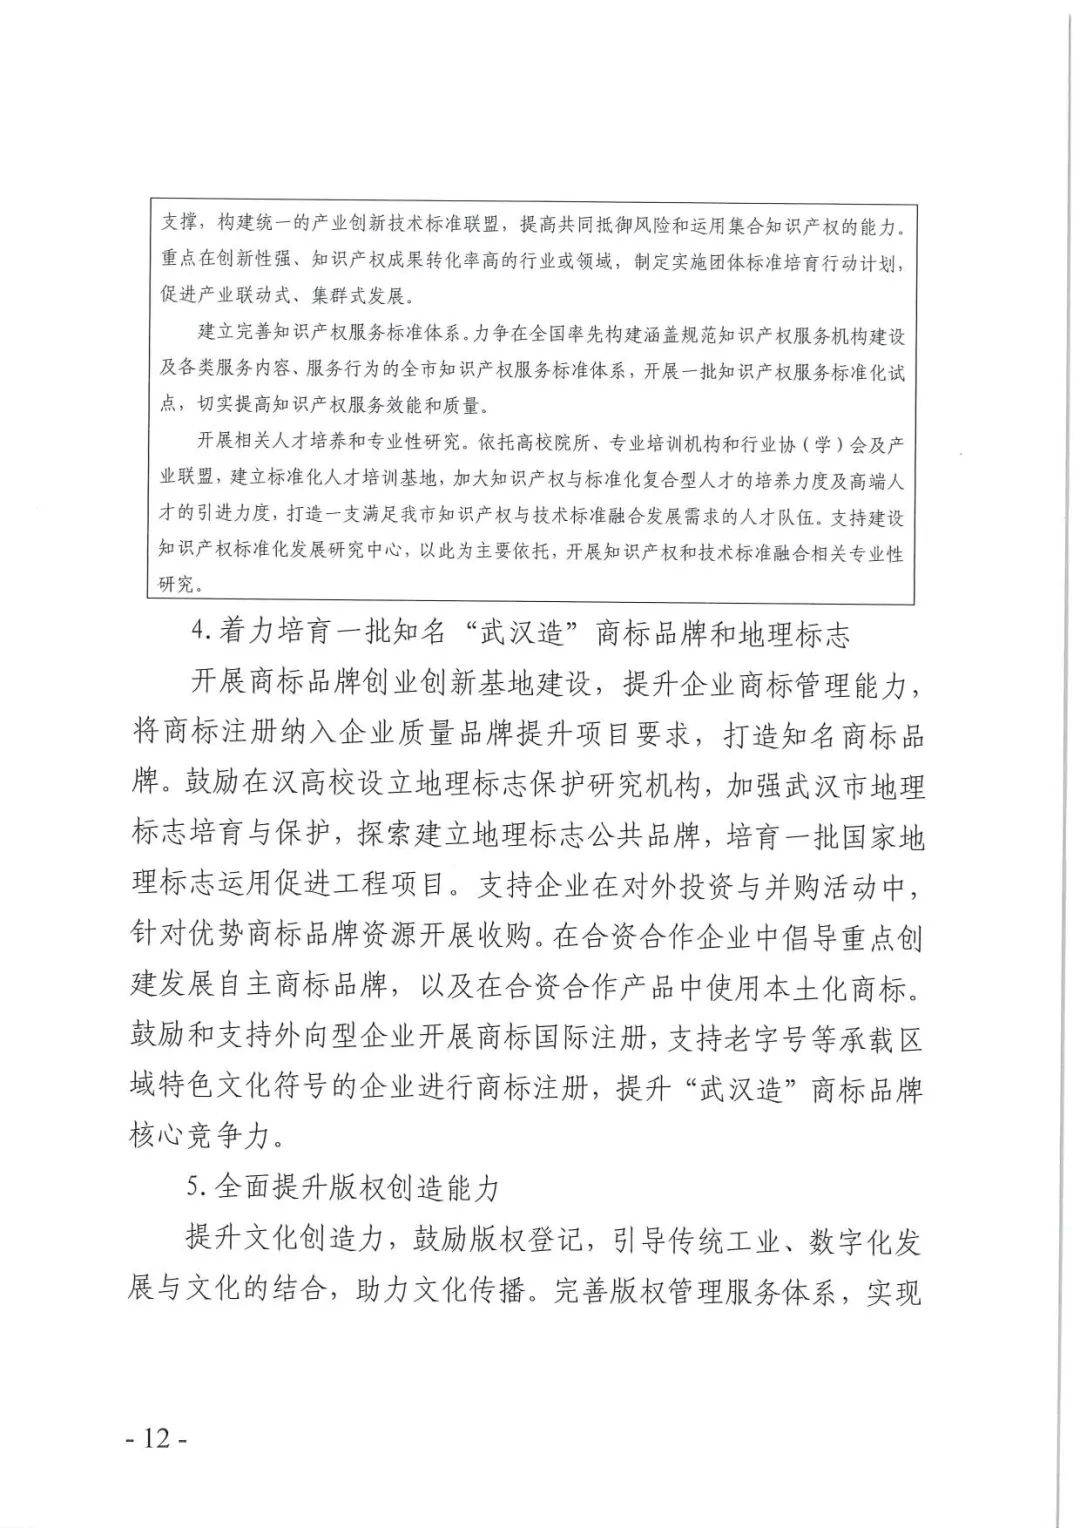 《武汉市知识产权“十四五”规划》全文发布